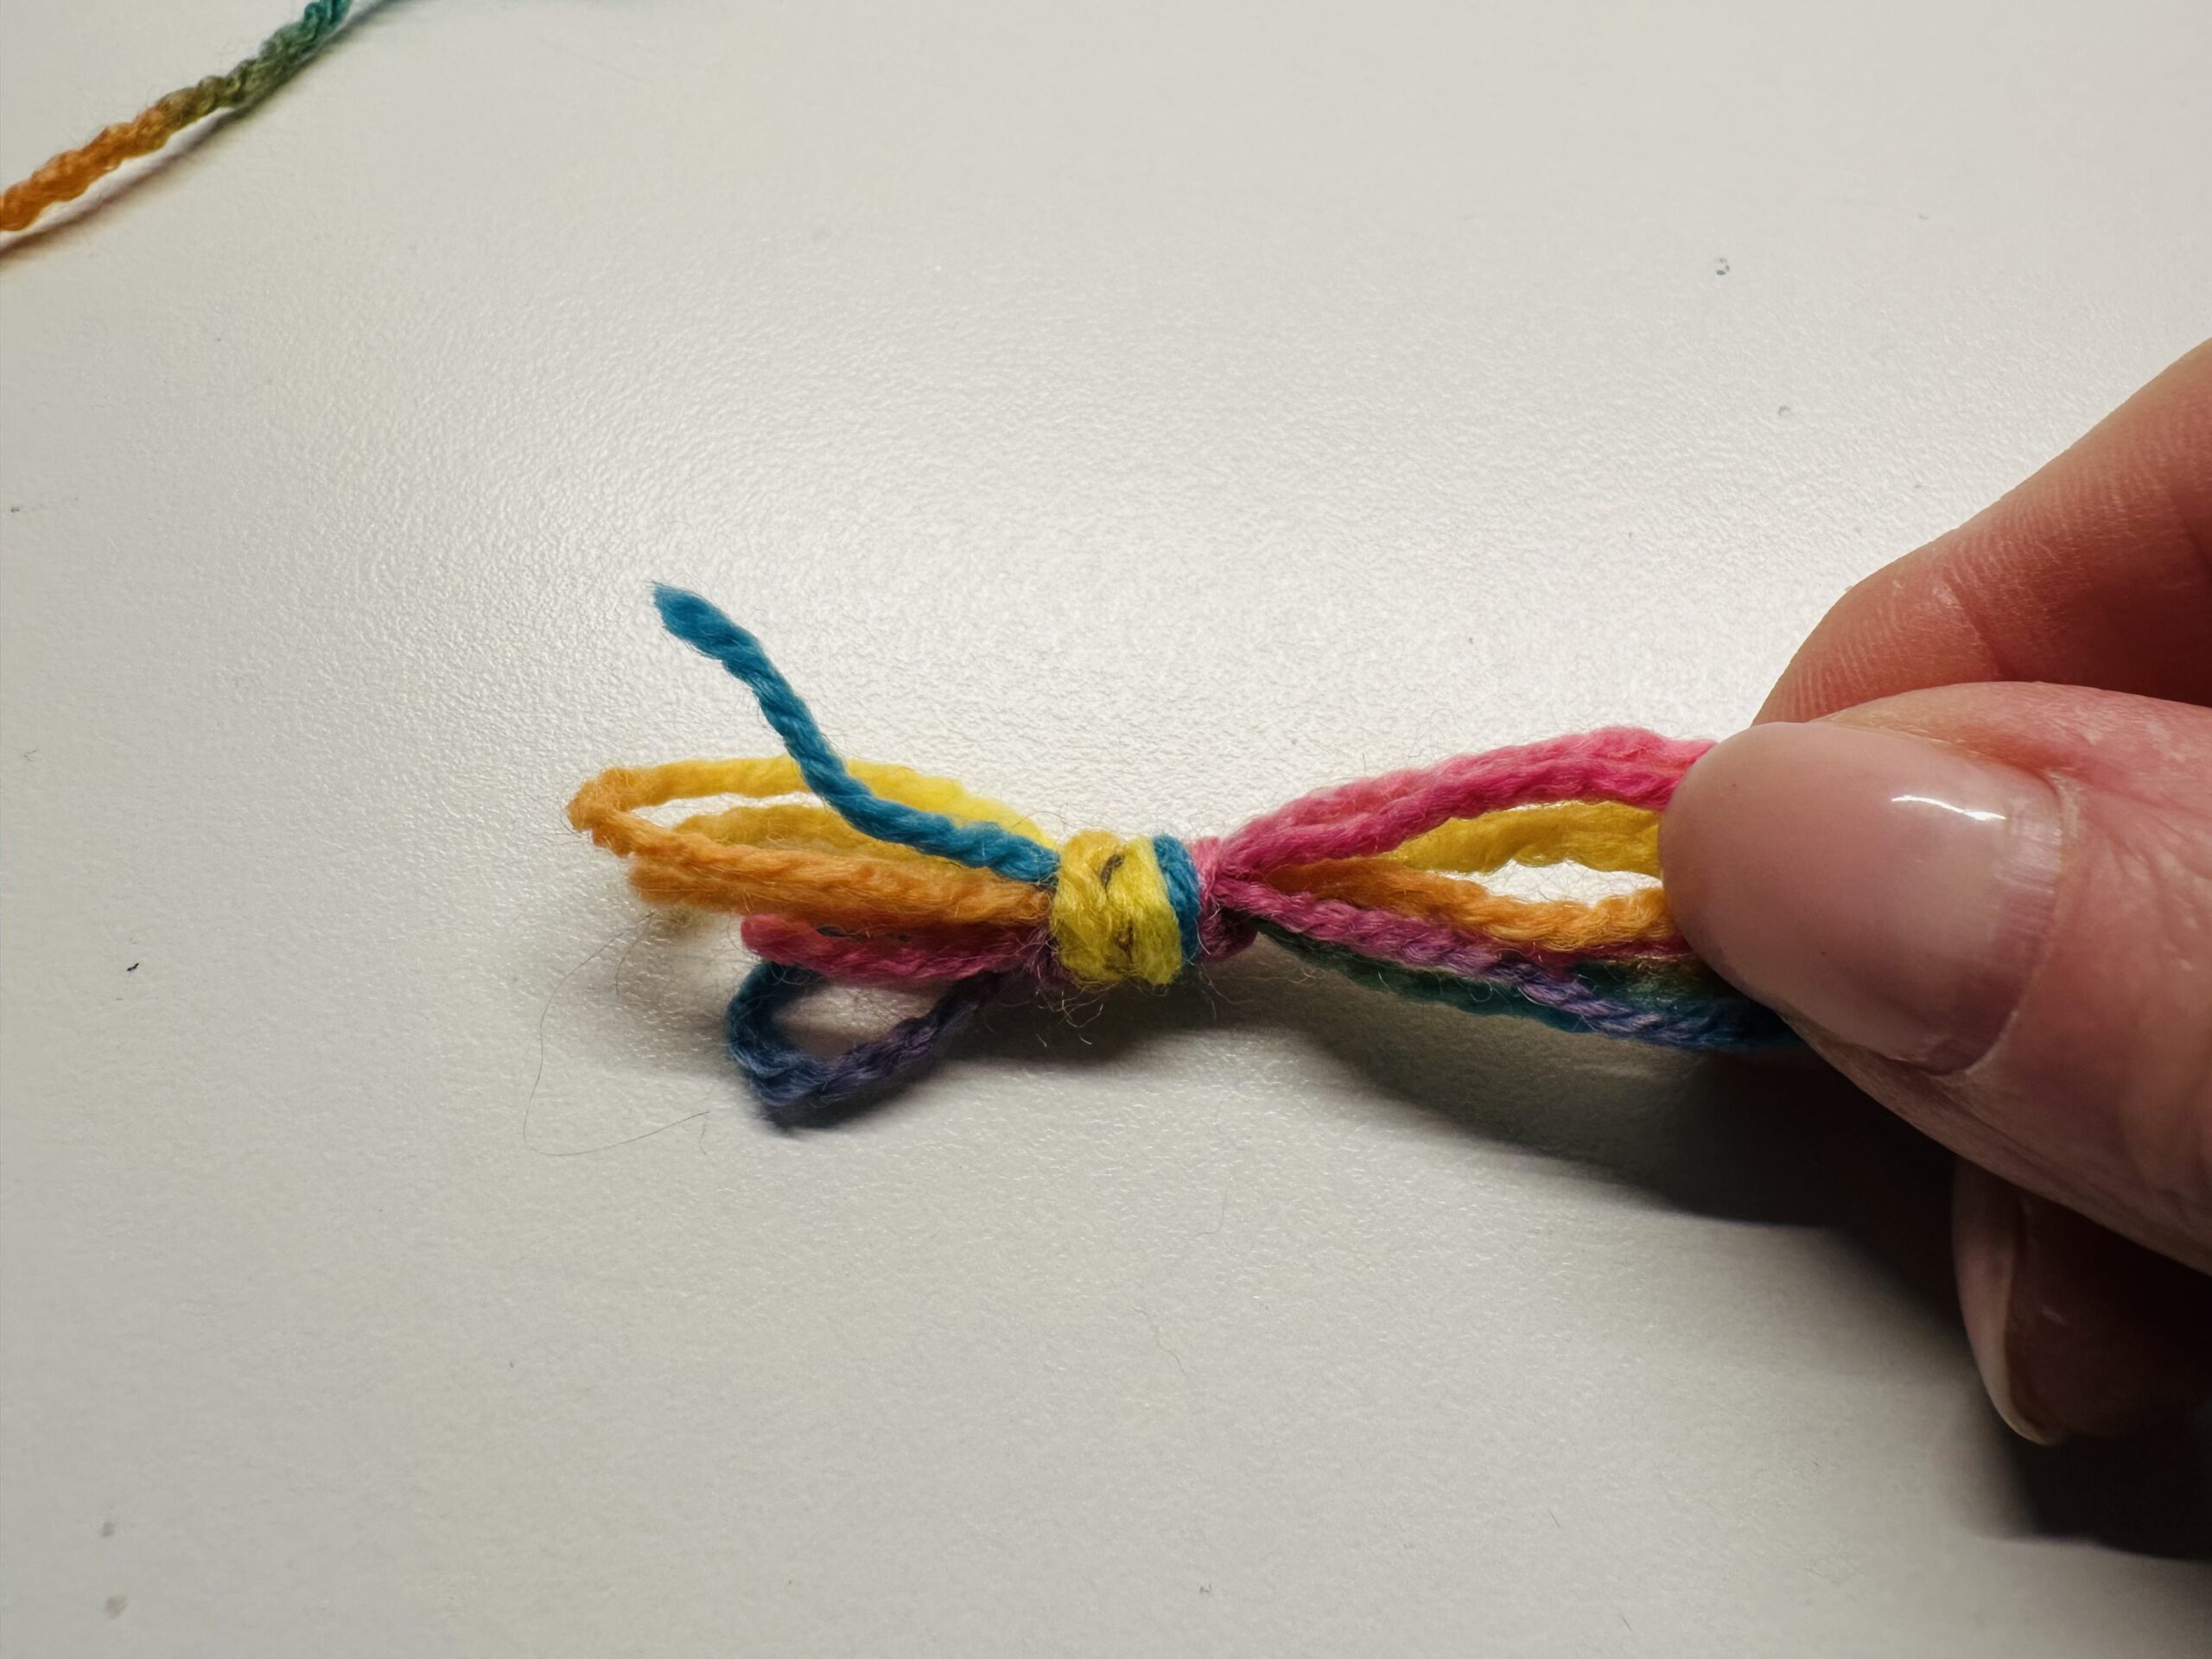 Bild zum Schritt 6 für das Bastel- und DIY-Abenteuer für Kinder: 'Auch am anderen Ende müsst ihr einen Knoten machen.'